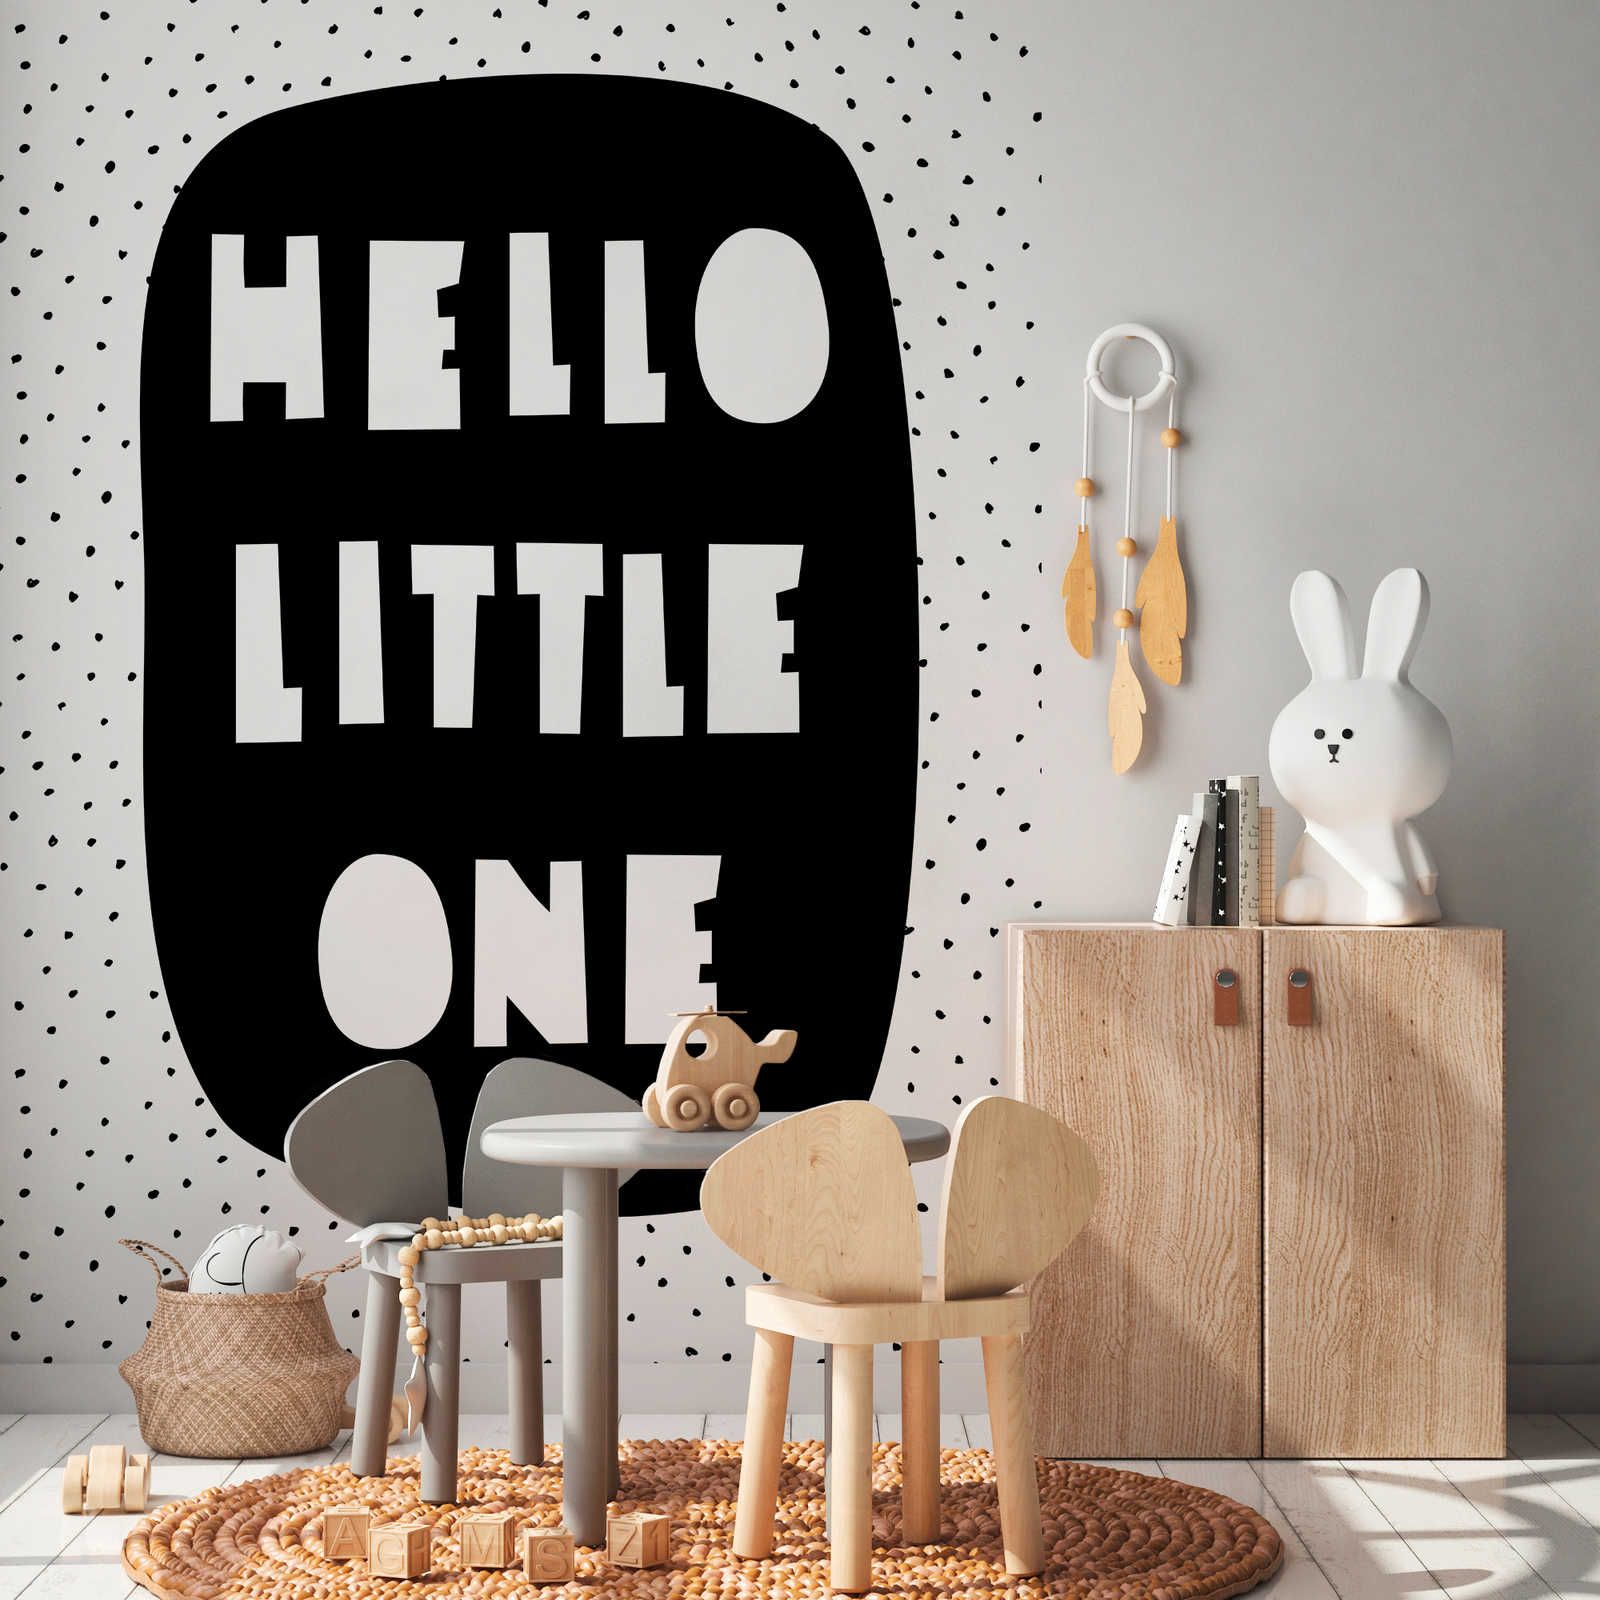 Digital behang voor kinderkamer met opschrift "Hello Little One" - Glad & licht glanzend vlies
